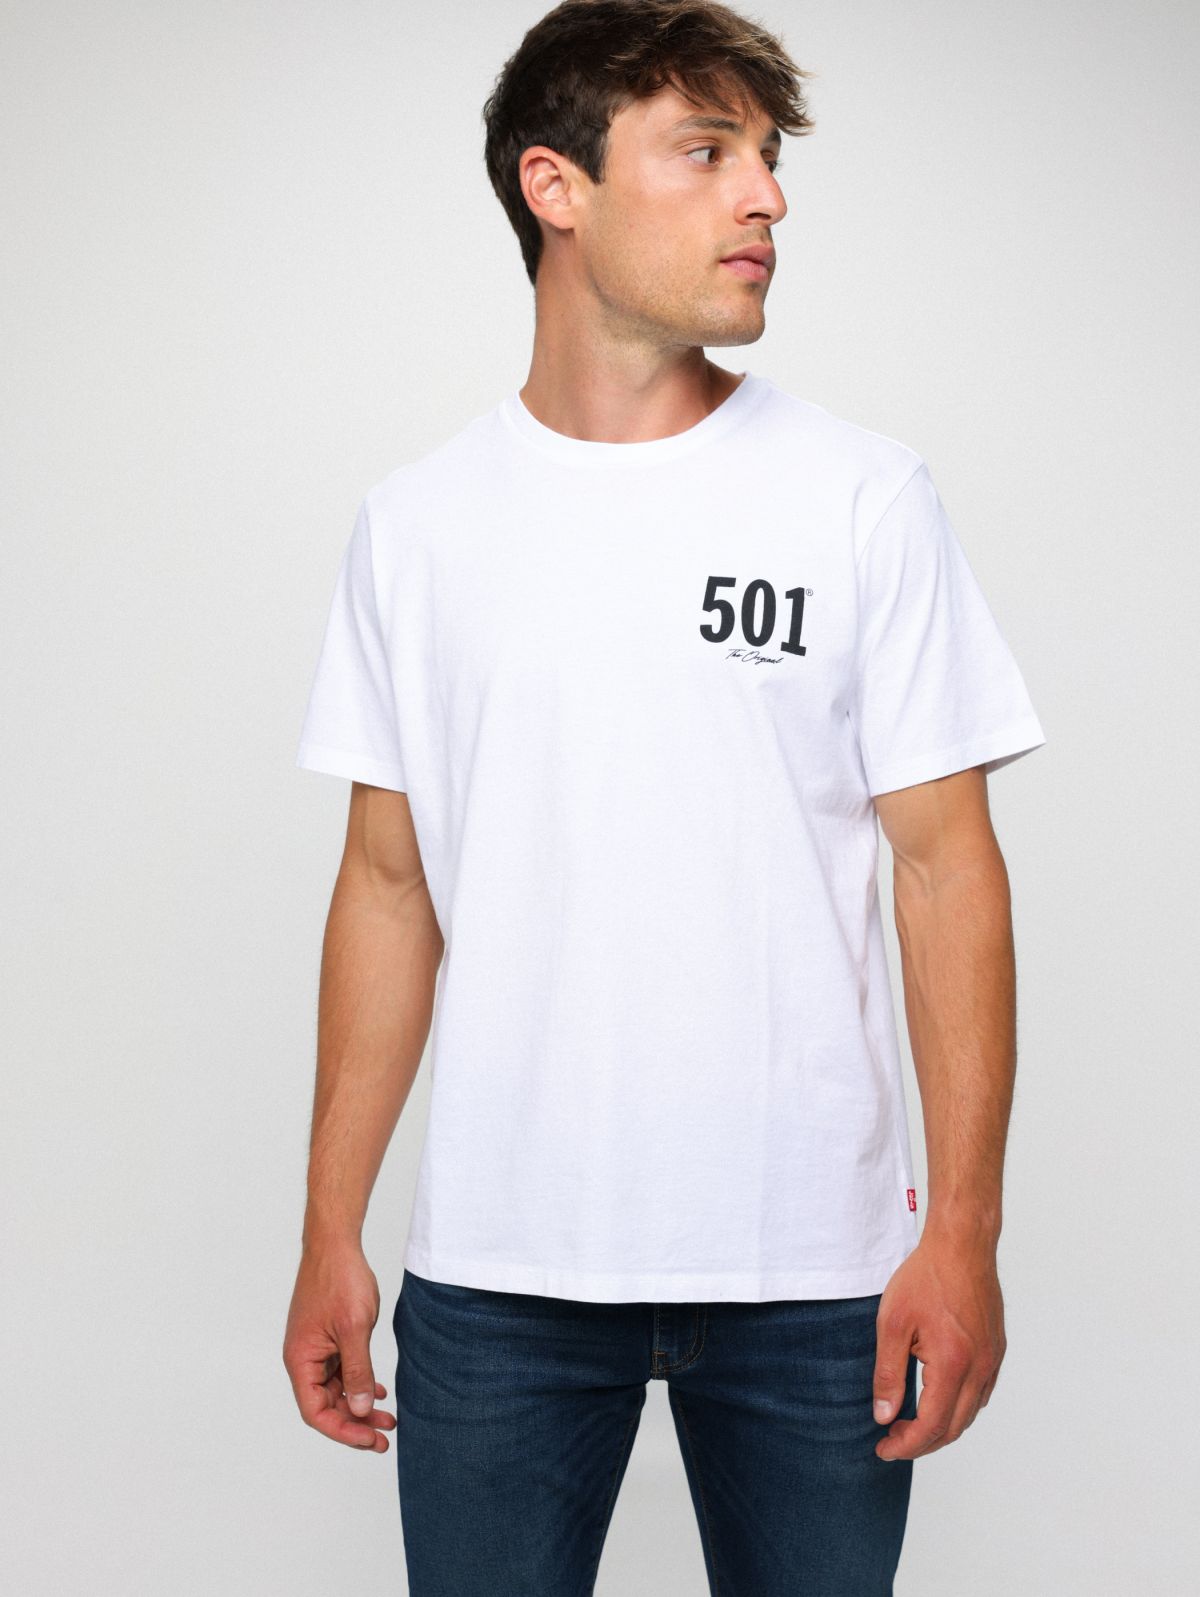  חולצת טי שירט עם הדפס 501 של LEVIS